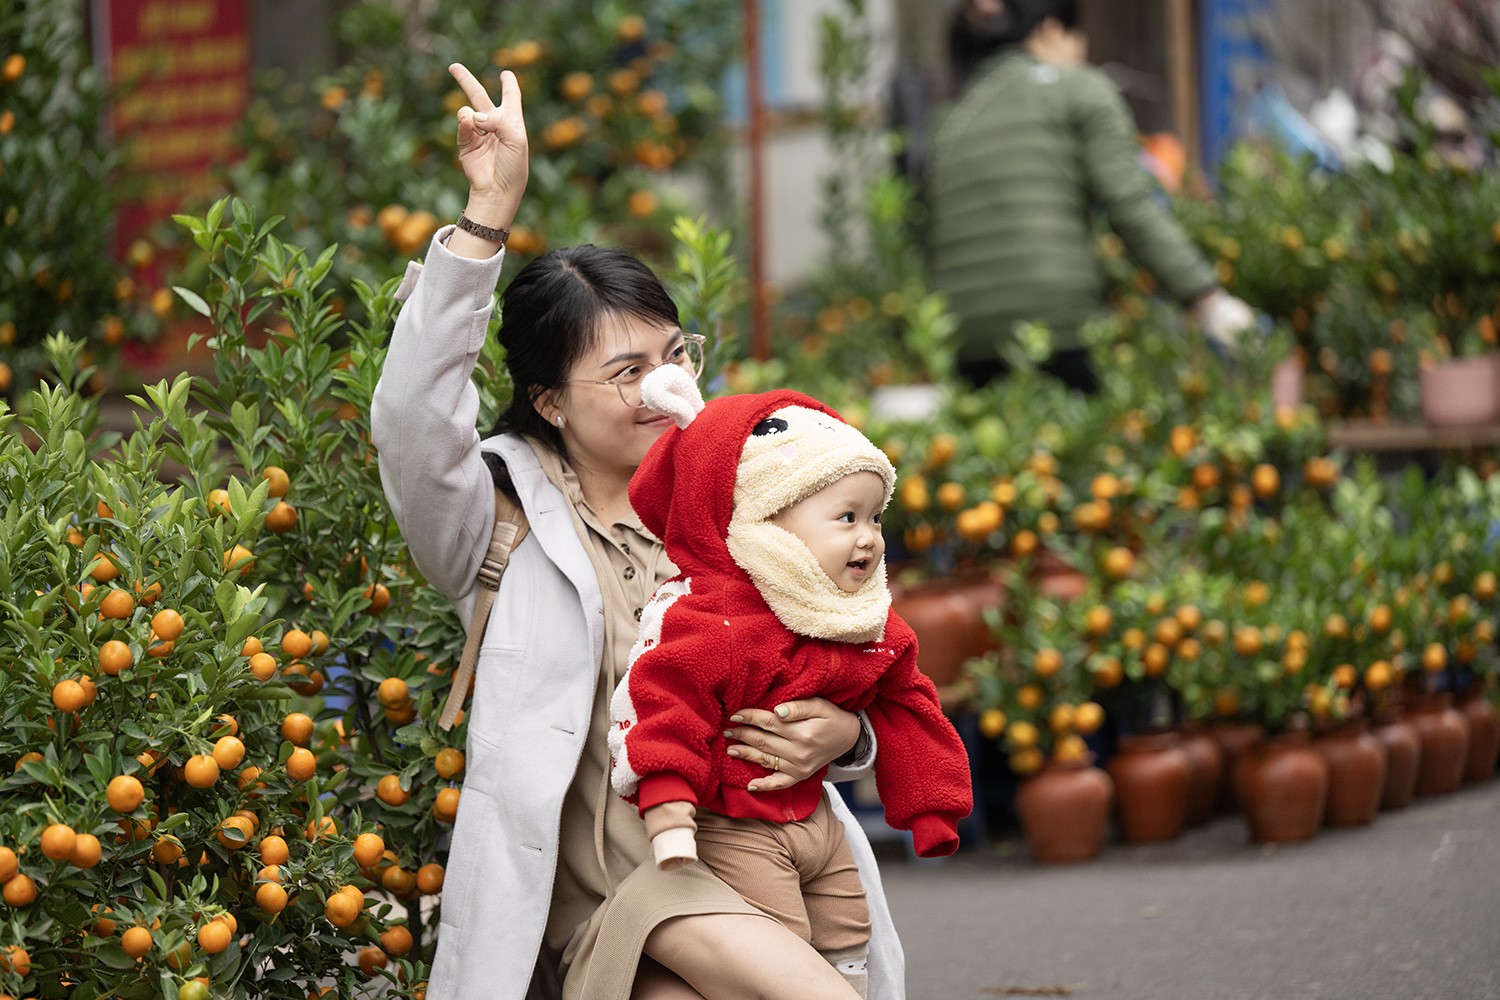 Không chỉ thu hút đông đảo người dân đến sắm Tết, chợ hoa Hàng Lược còn là địa điểm được nhiều gia đình tới đây chụp ảnh để lưu giữ lại khoảnh khắc Tết đến xuân về.